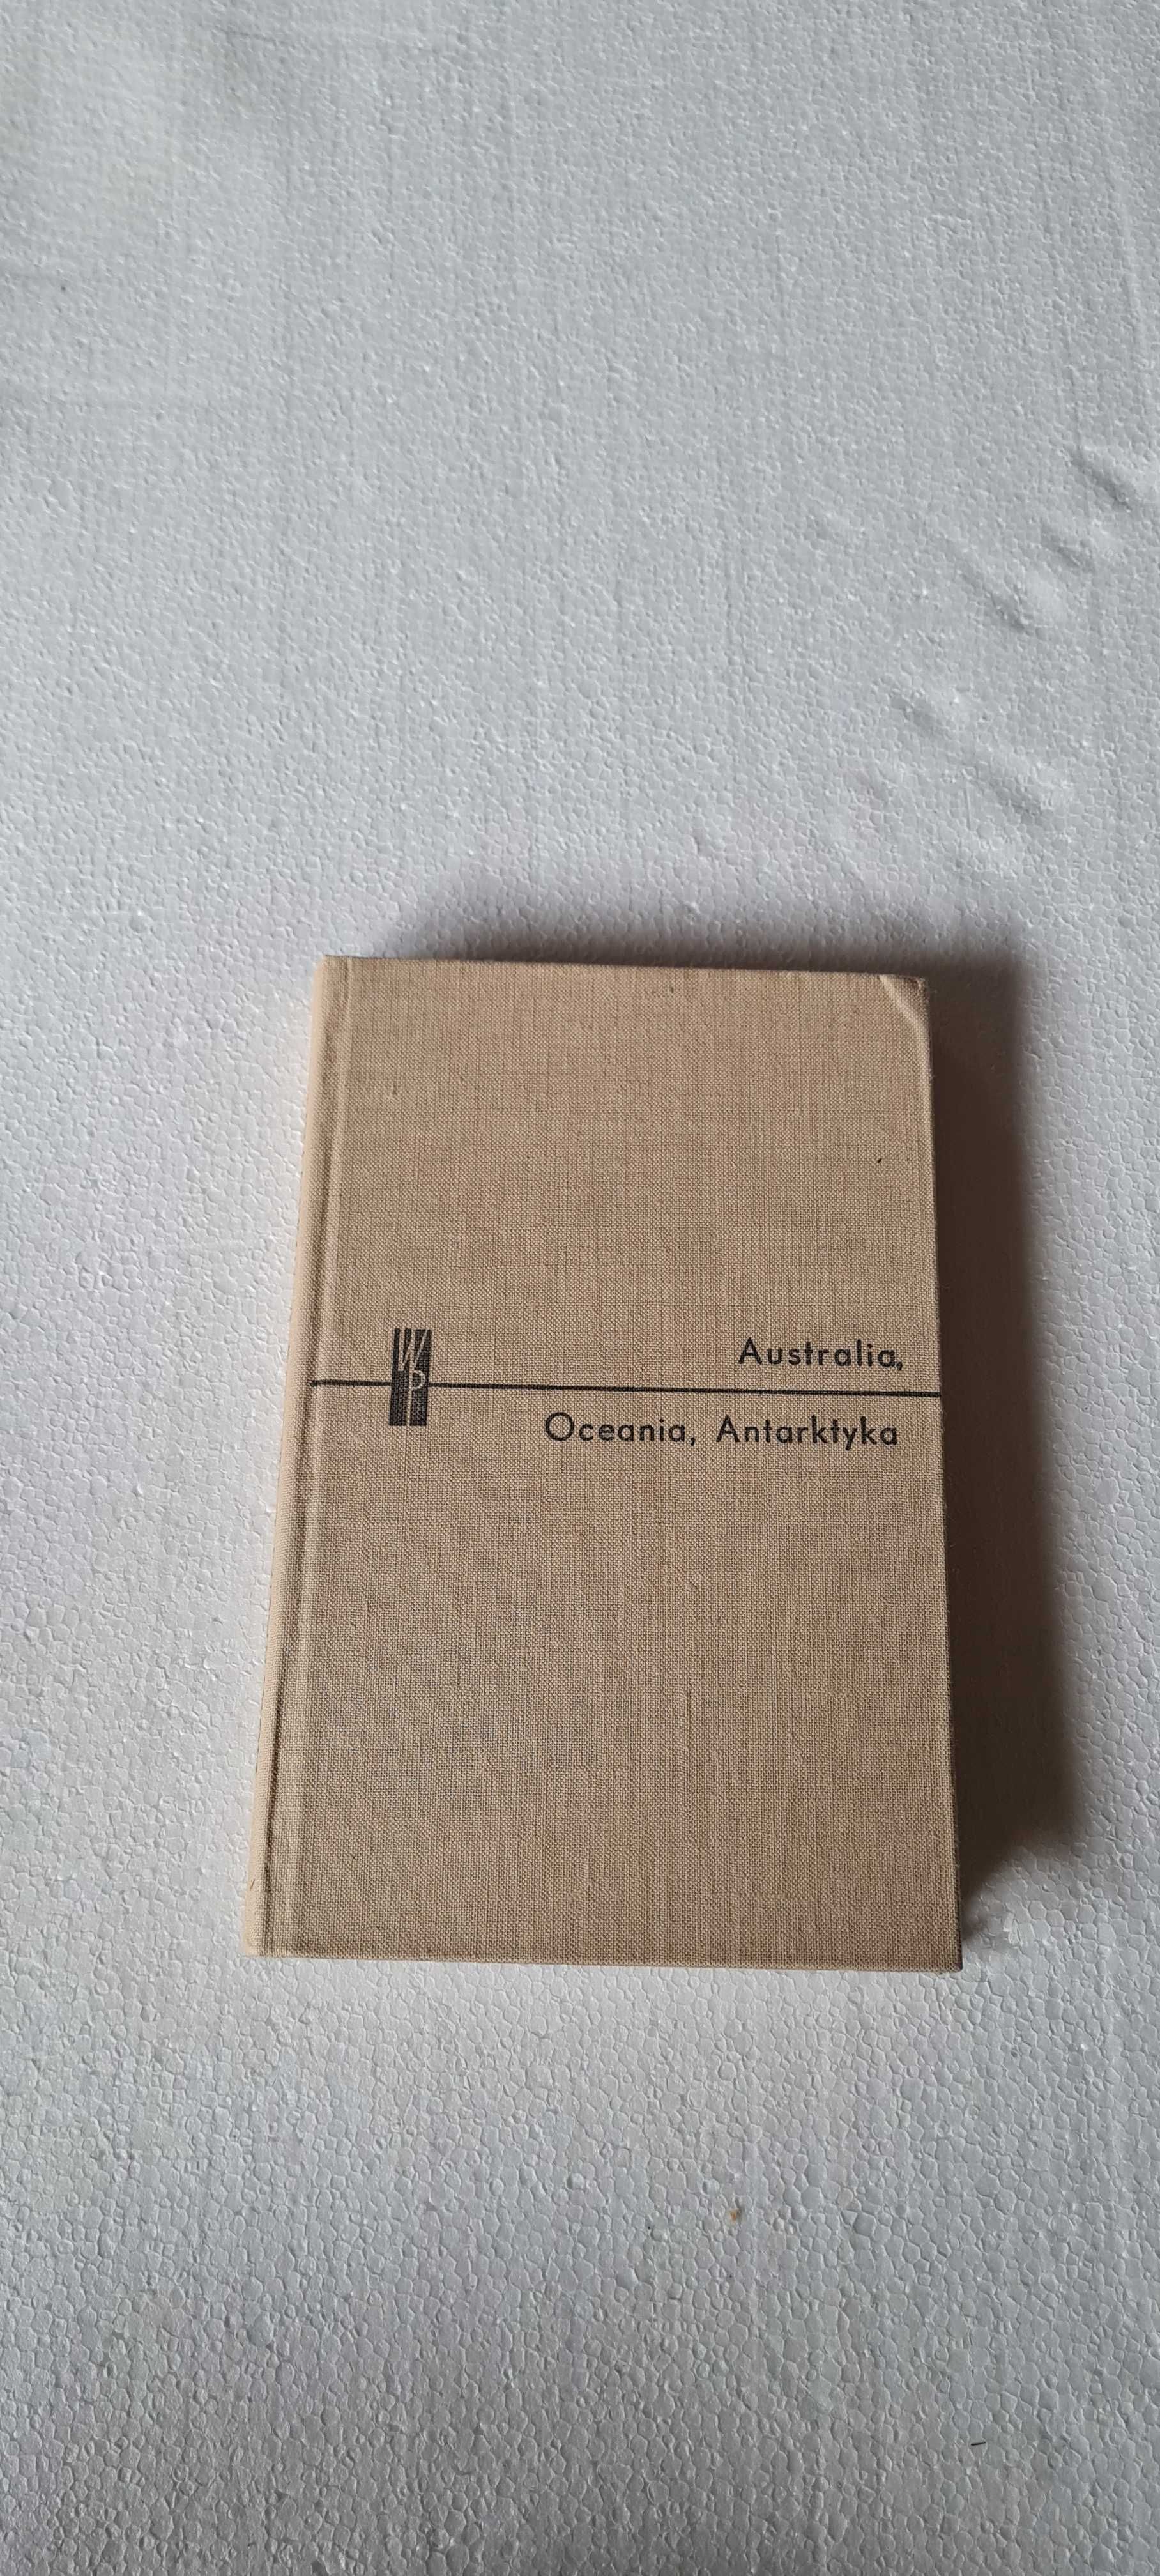 Australia, Oceania, Arktyka PWN Stanisław Leszczycki, M. Fleszar